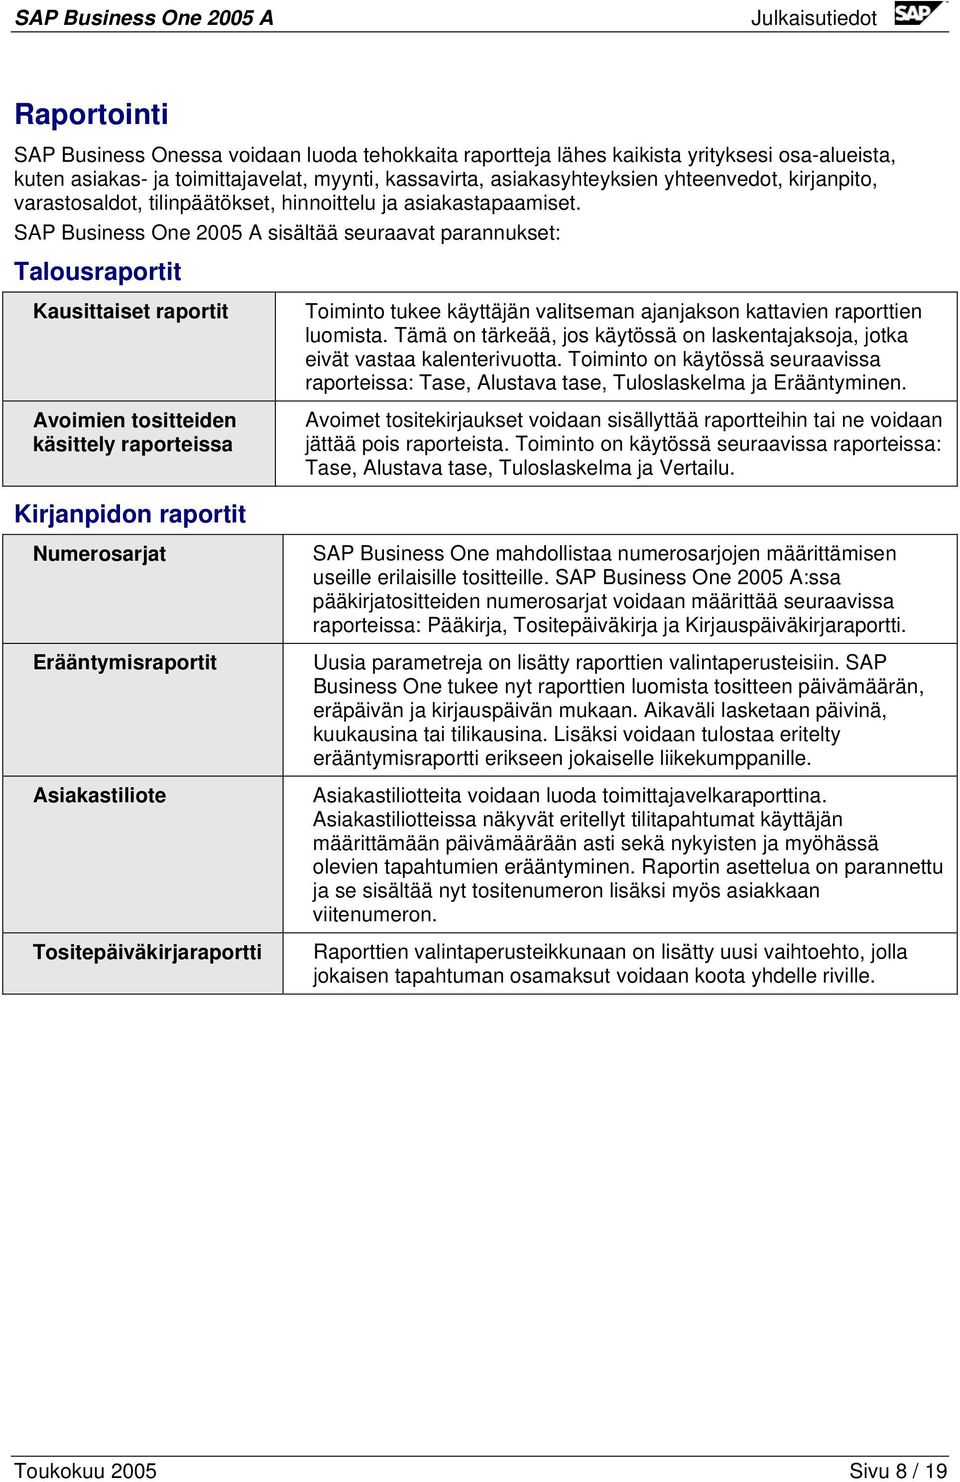 SAP Business One 2005 A sisältää seuraavat parannukset: Talousraportit Kausittaiset raportit Avoimien tositteiden käsittely raporteissa Toiminto tukee käyttäjän valitseman ajanjakson kattavien